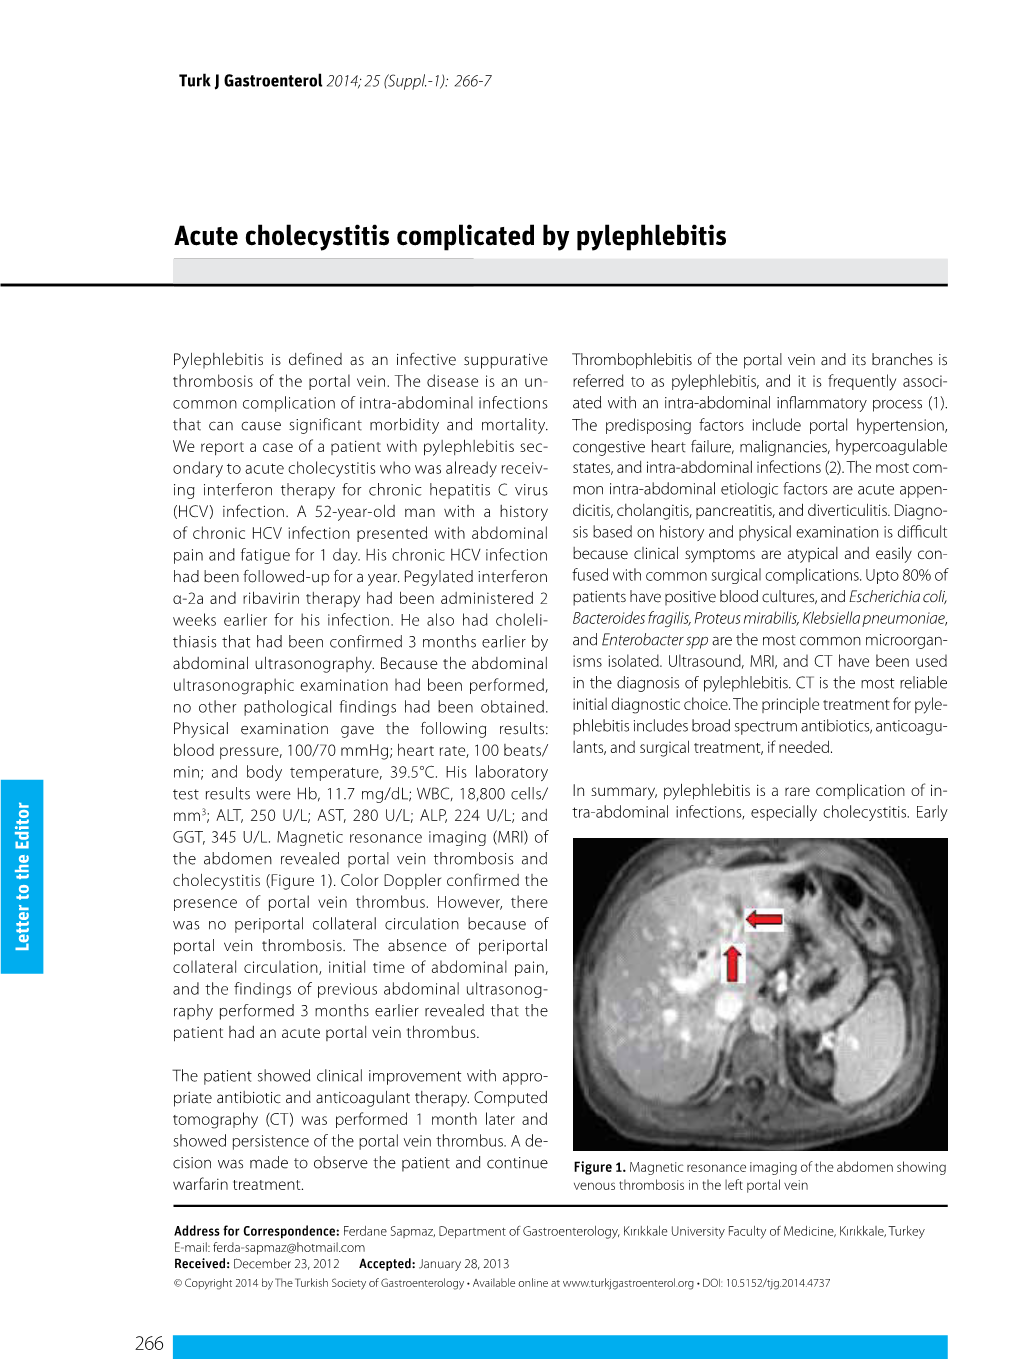 Acute Cholecystitis Complicated by Pylephlebitis Xxxxxxxxxxxxxxx